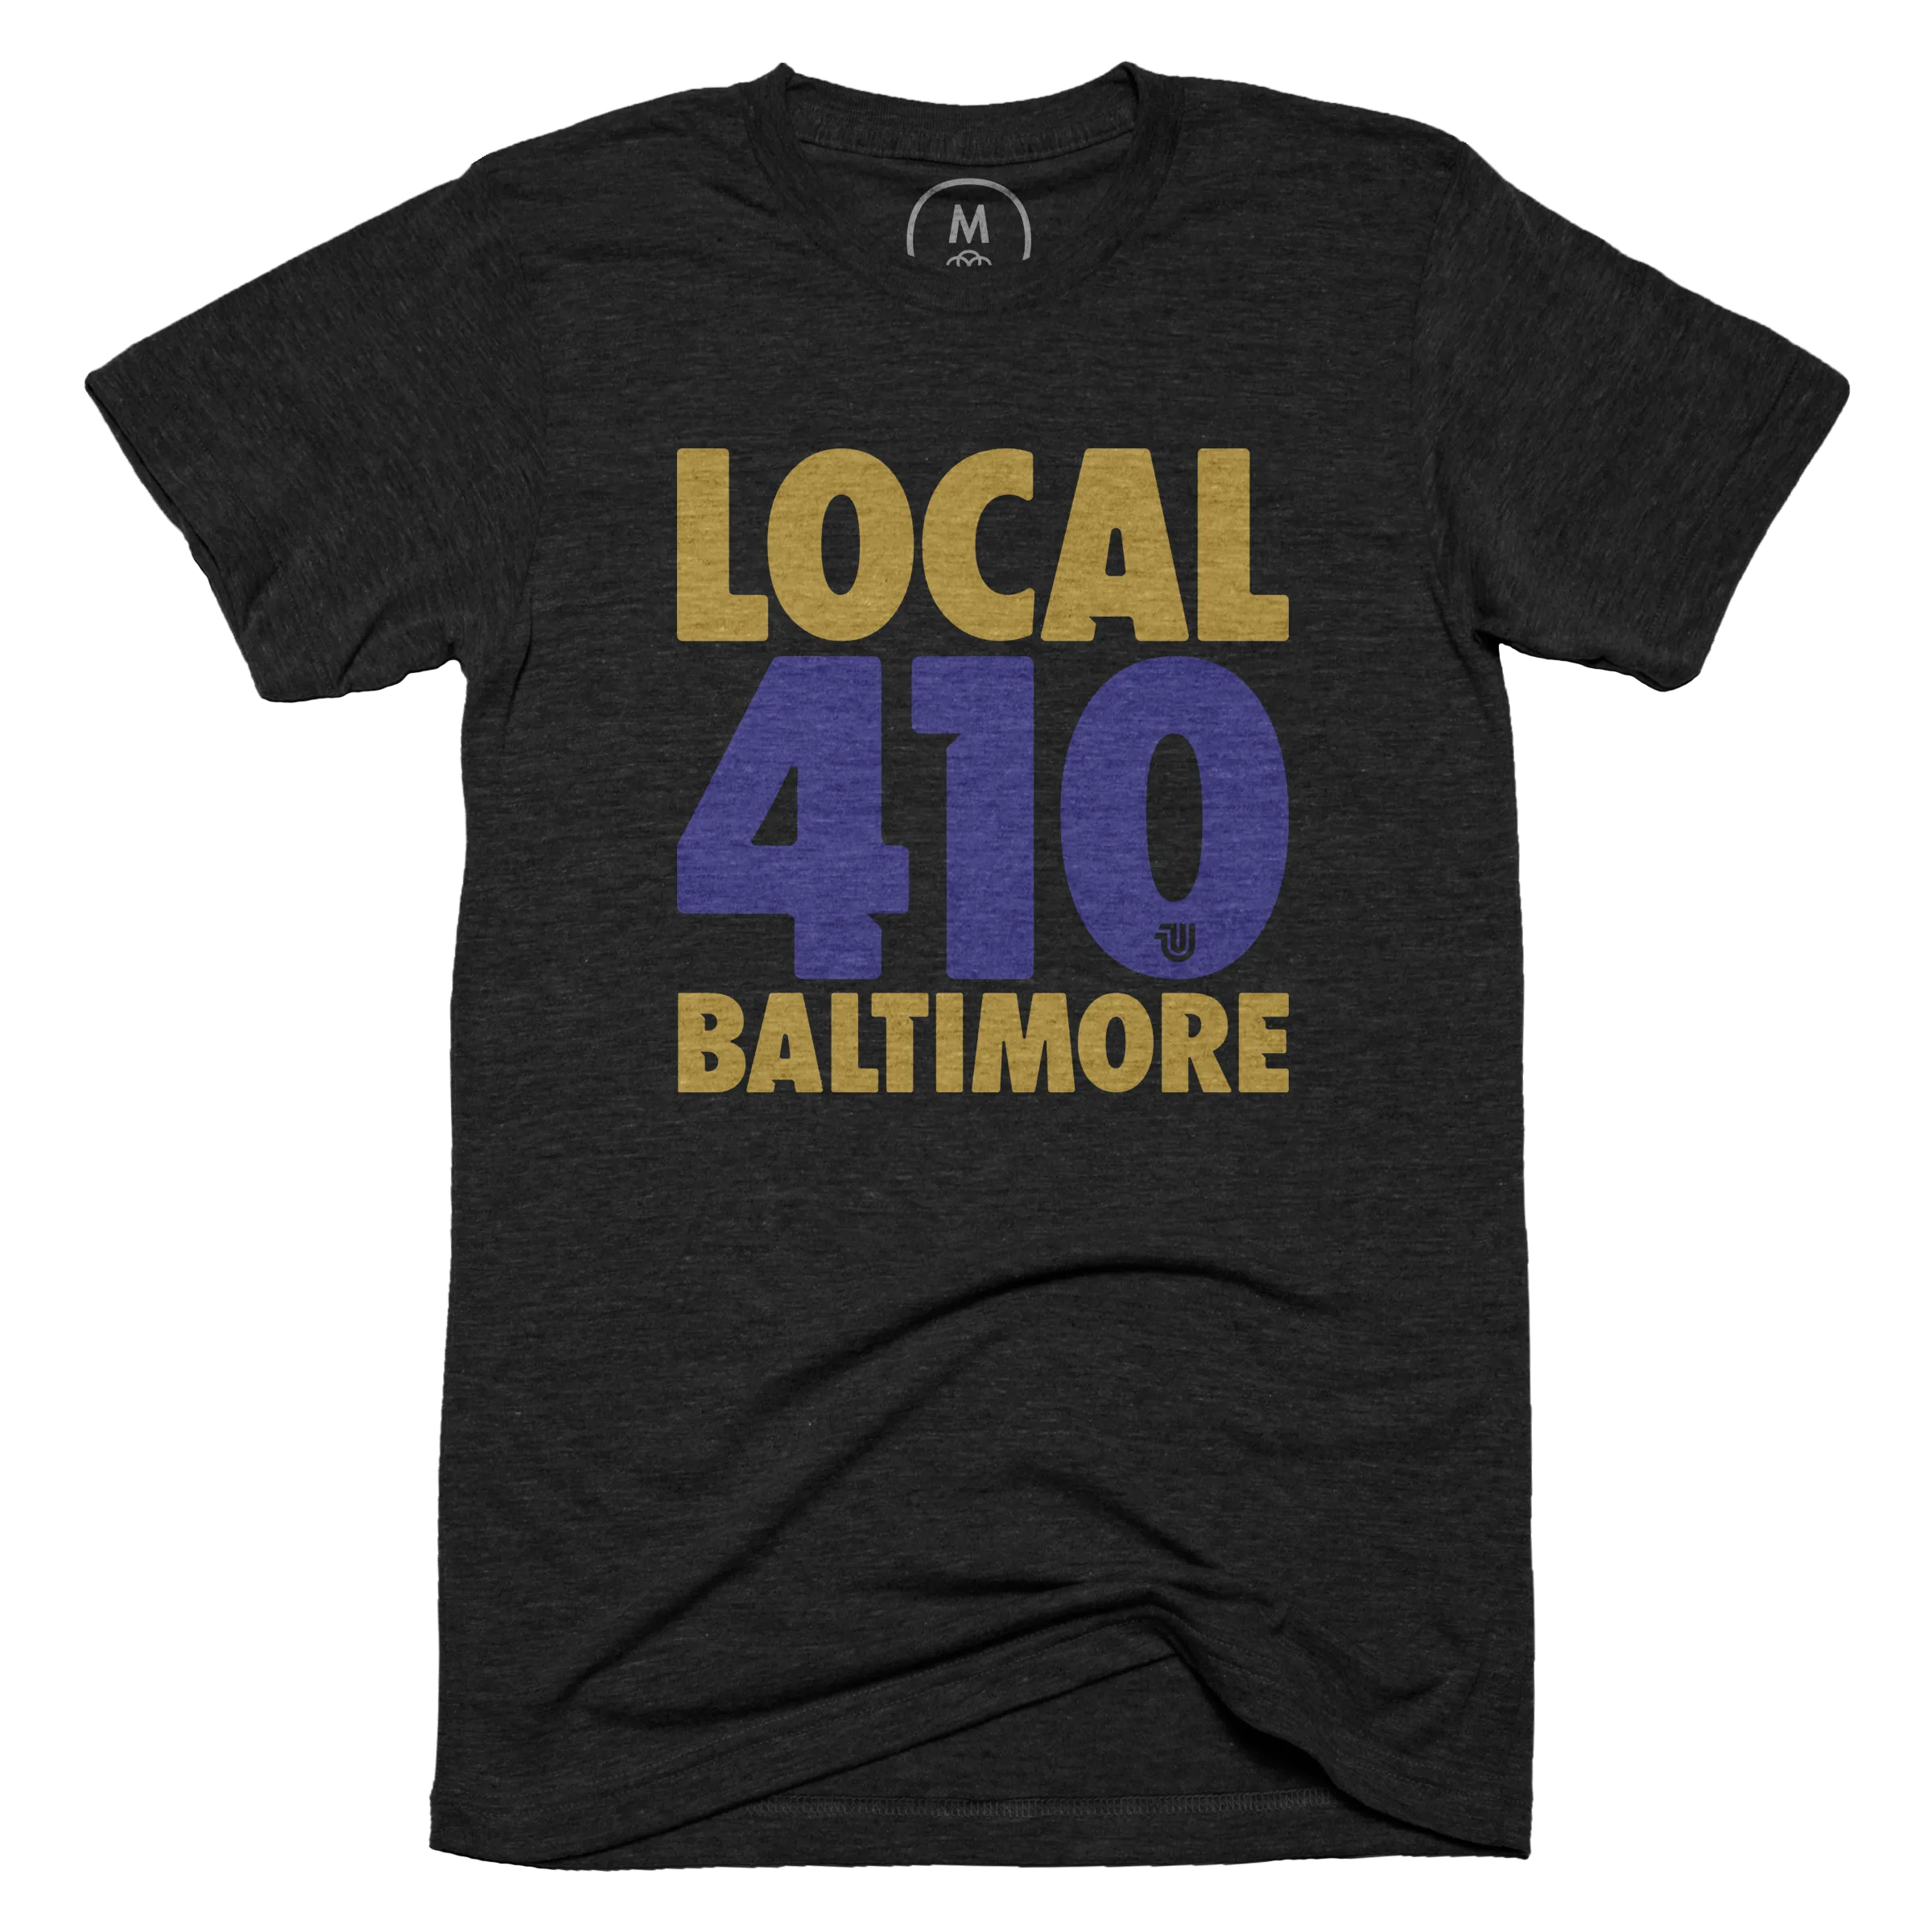 Baltimore Local 410 — Futura Colors Edition” graphic tee, pullover